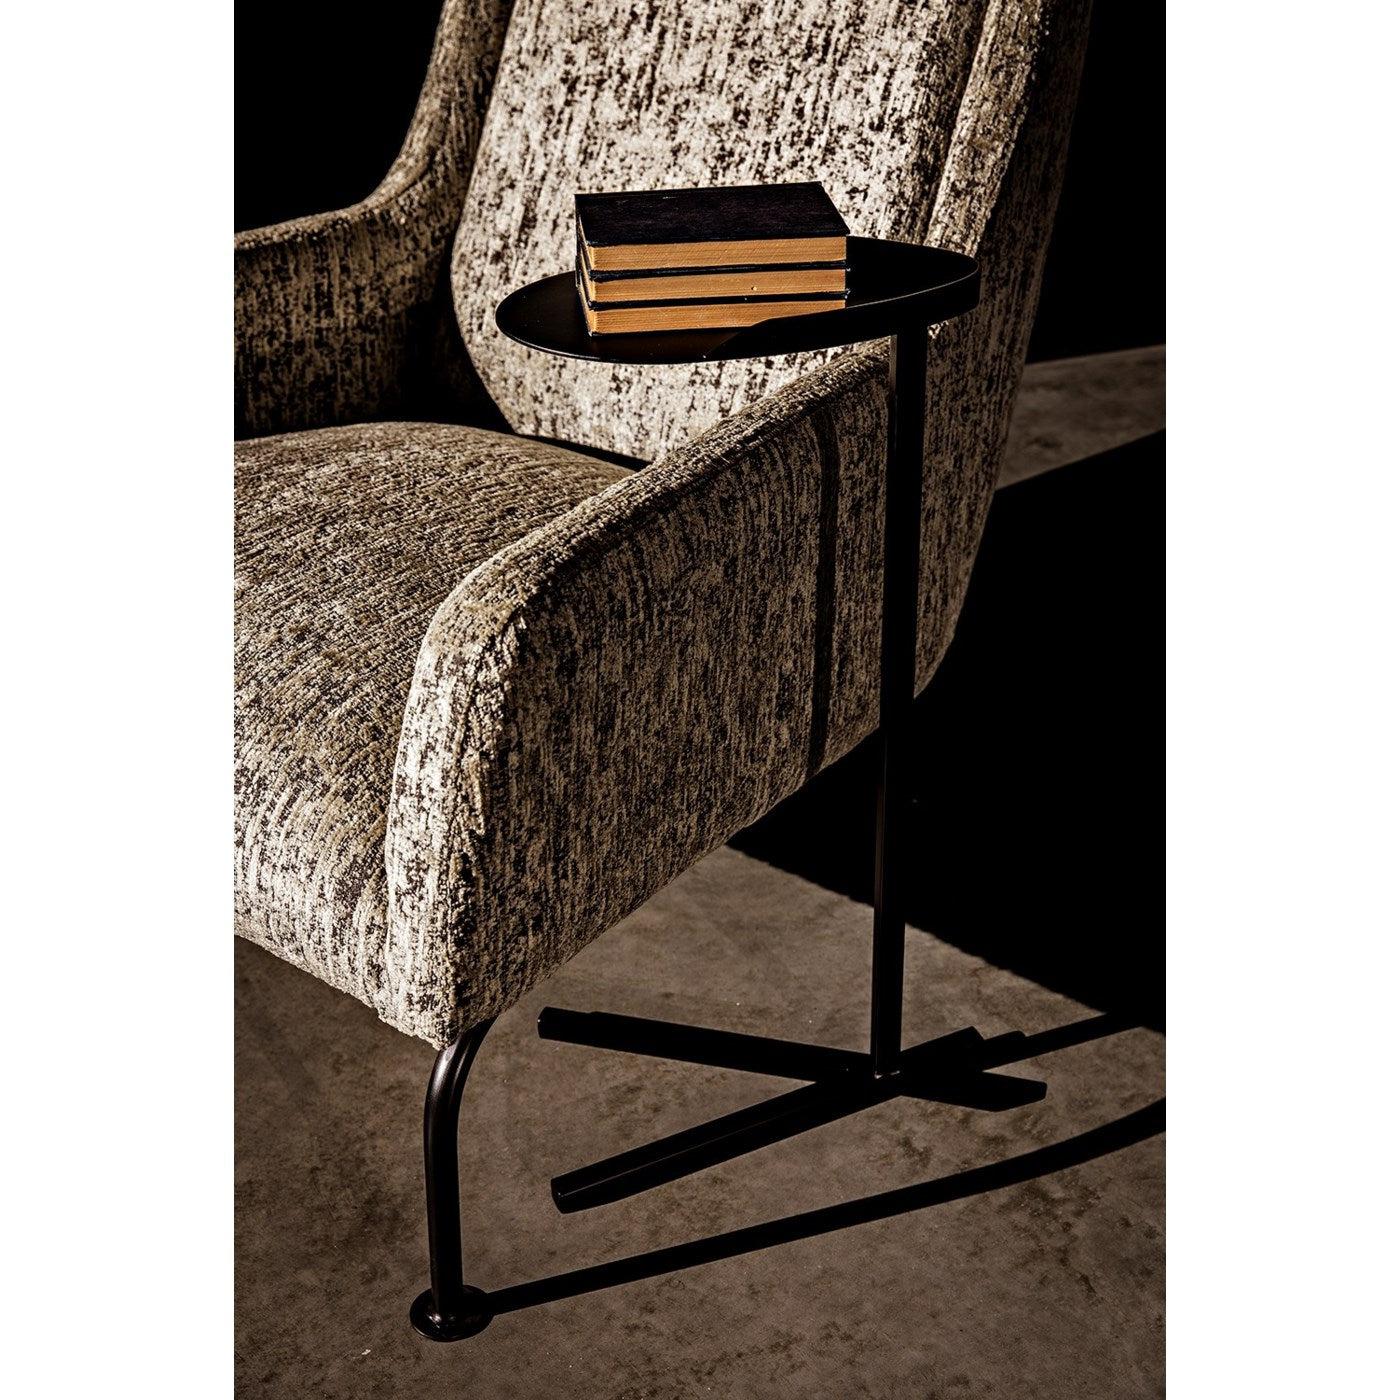 Abelia Chair-CFC Furniture-Blue Hand Home